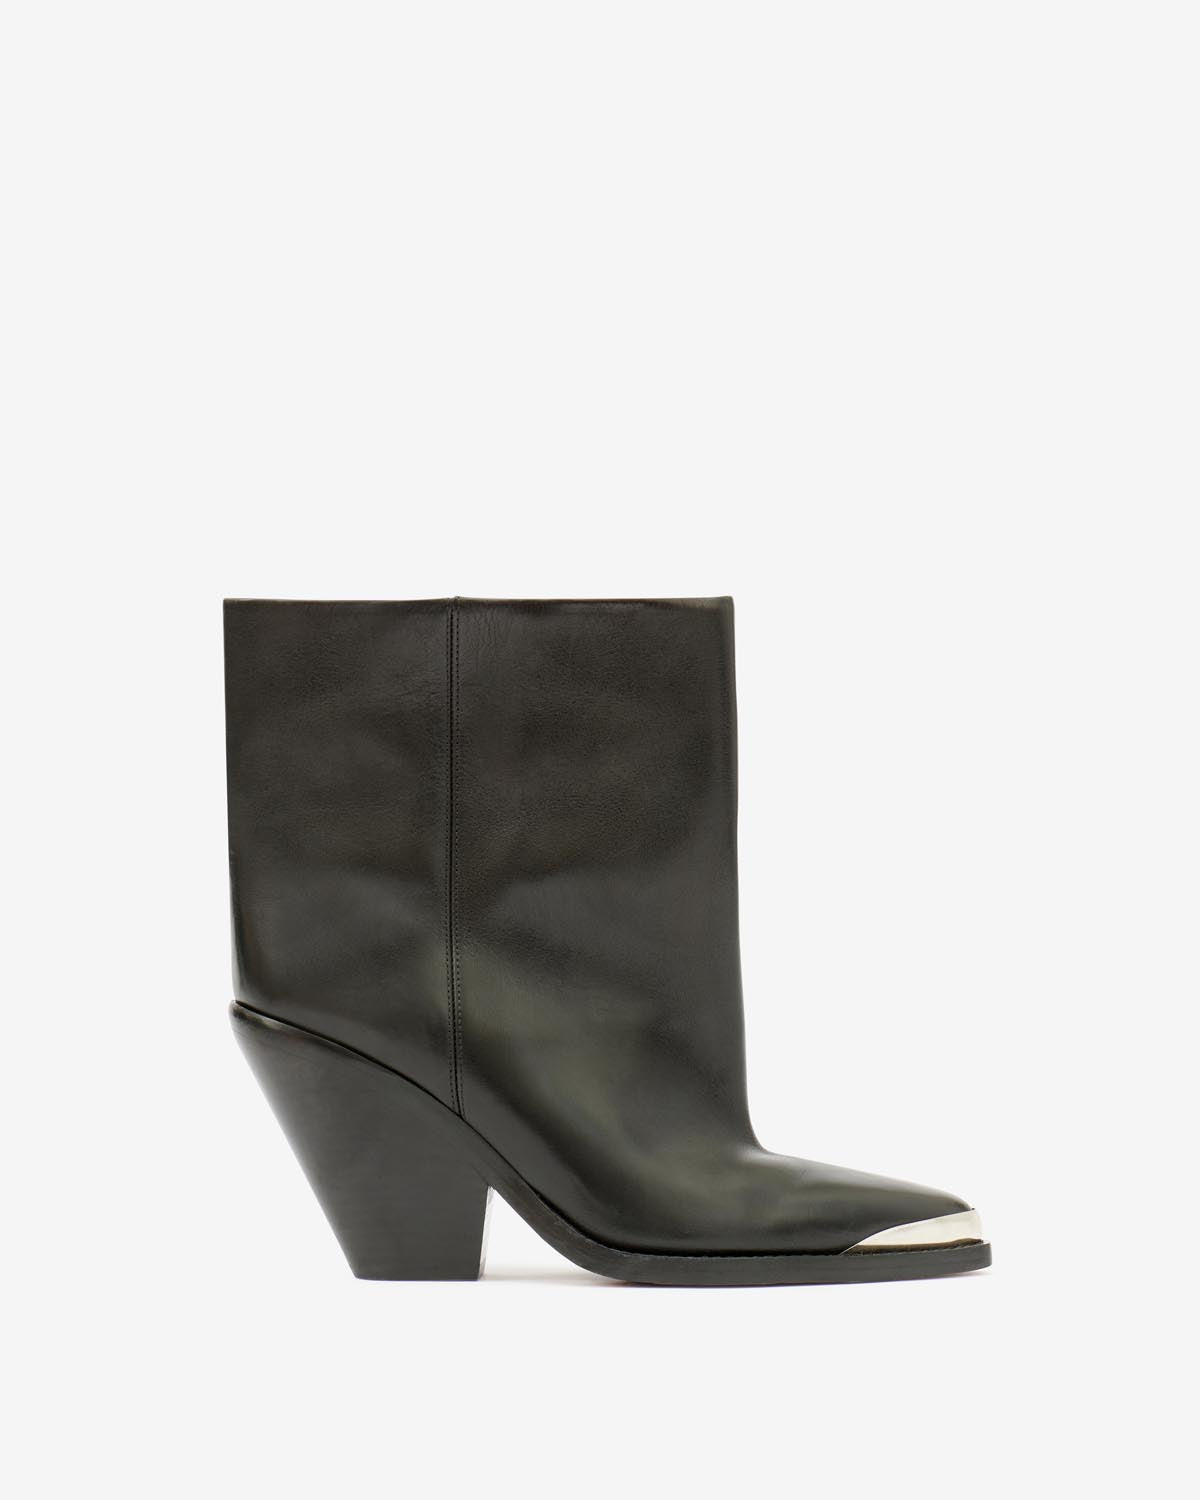 Boots ladel Woman Noir 1